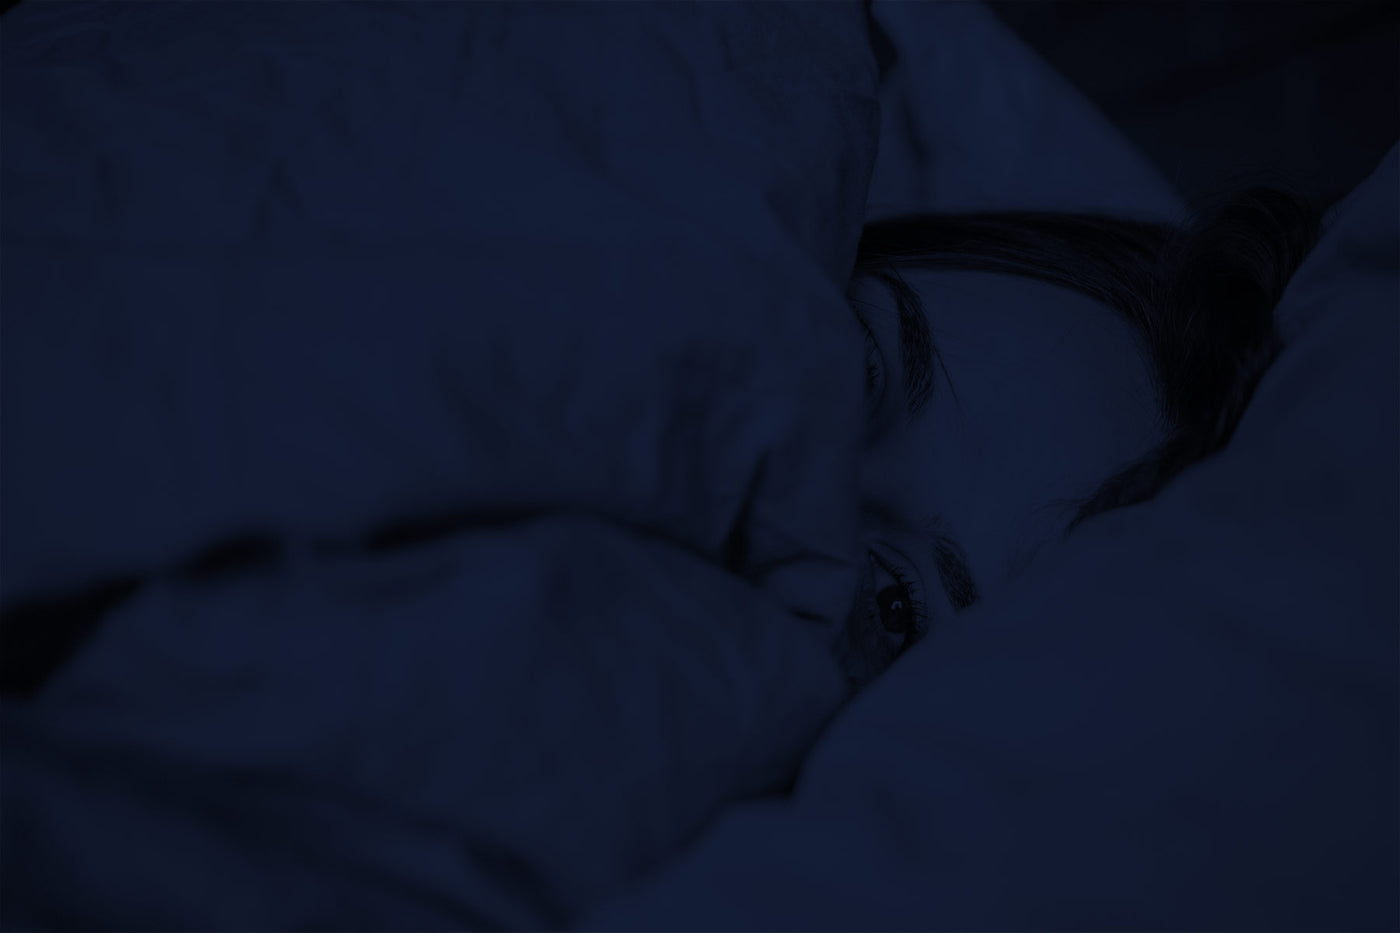 Gerade aufgewachte Frau im Bett eingekuschelt in Bettdecke